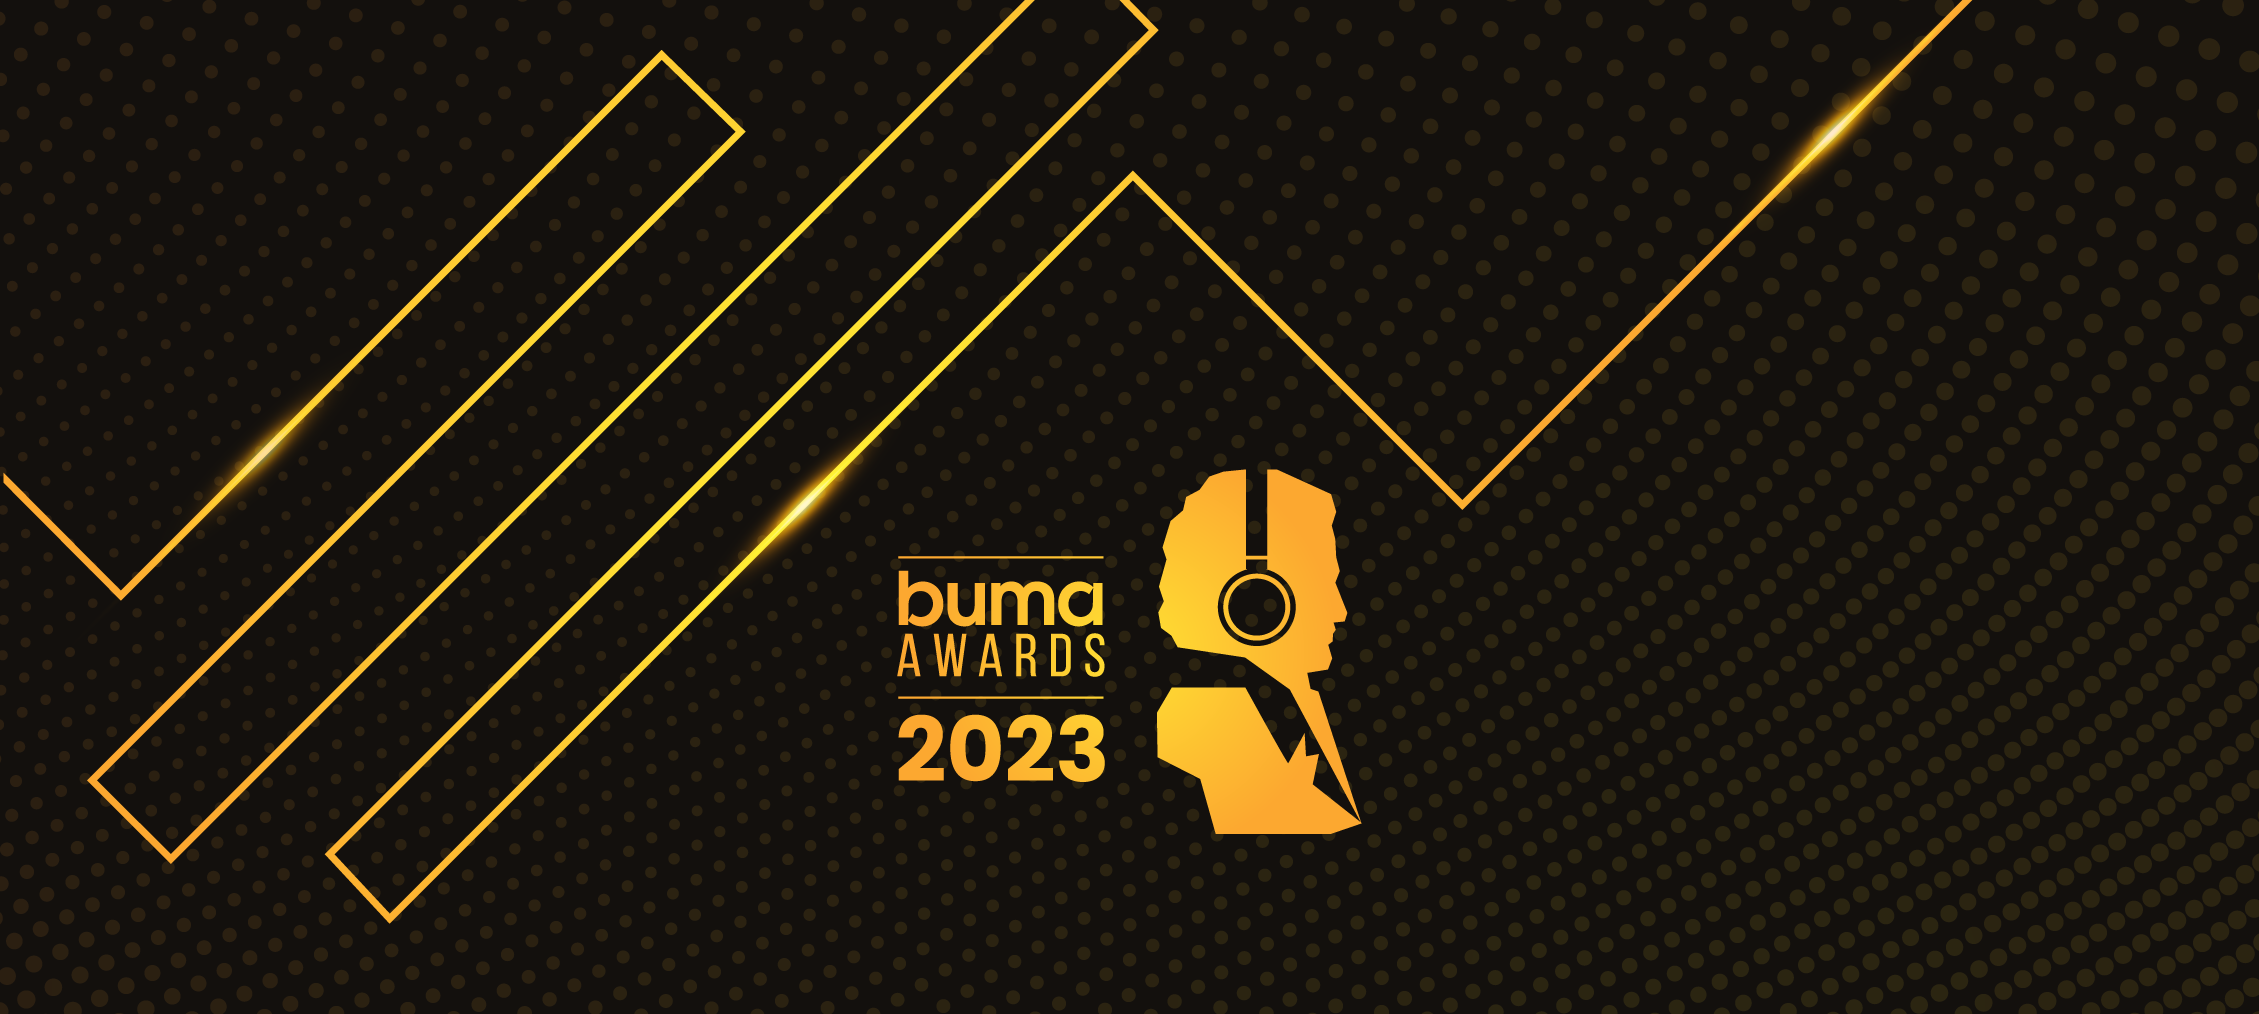 Buma Awards